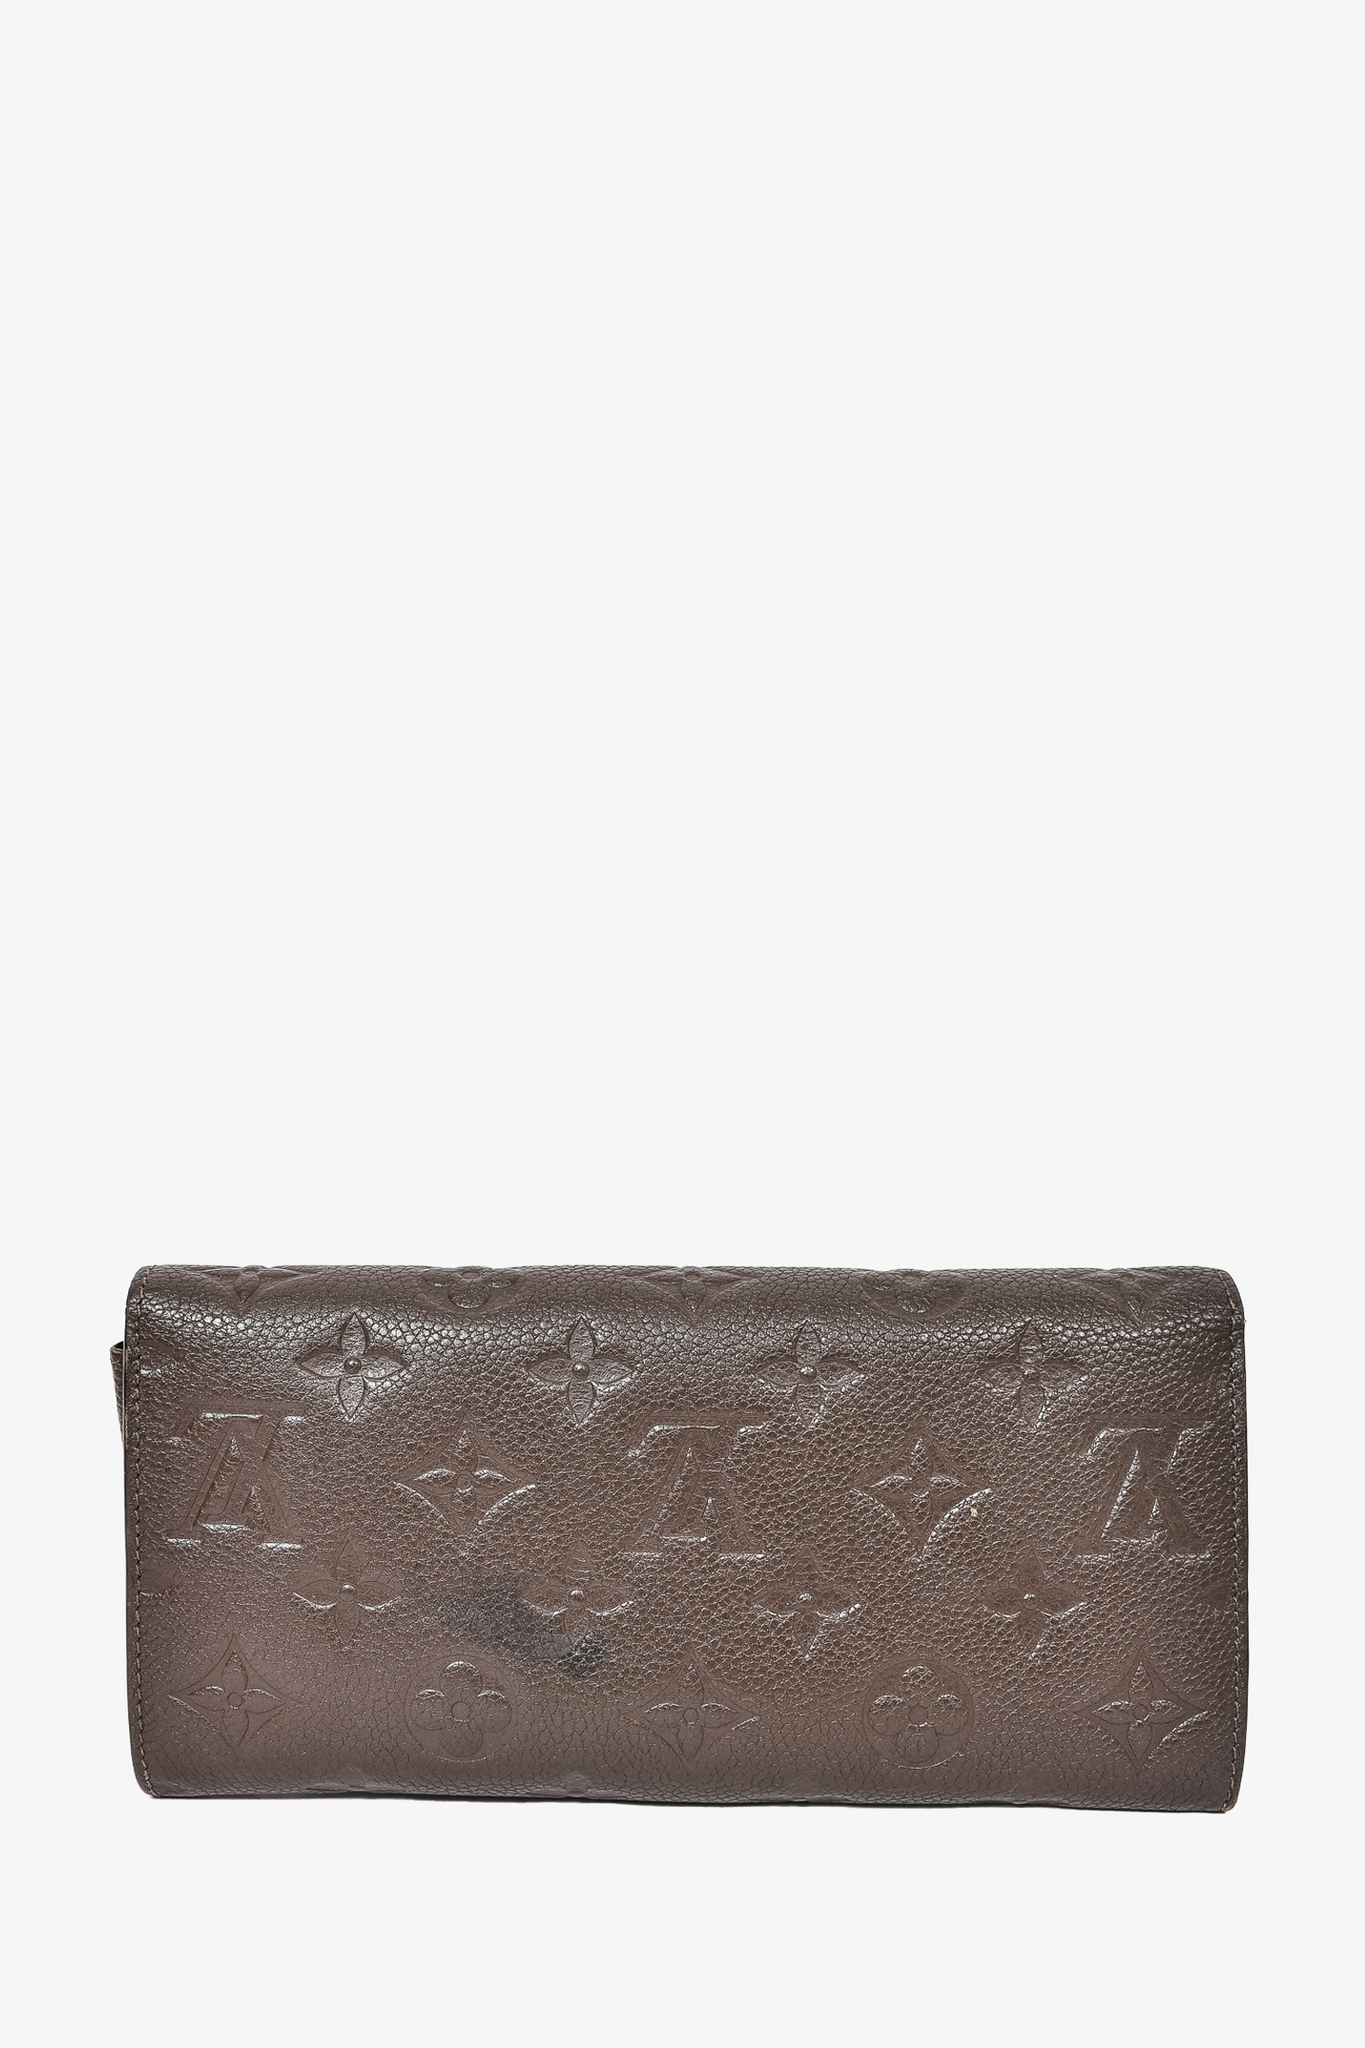 Louis Vuitton 2019 Empreinte Leather Sarah Wallet - Blue Wallets